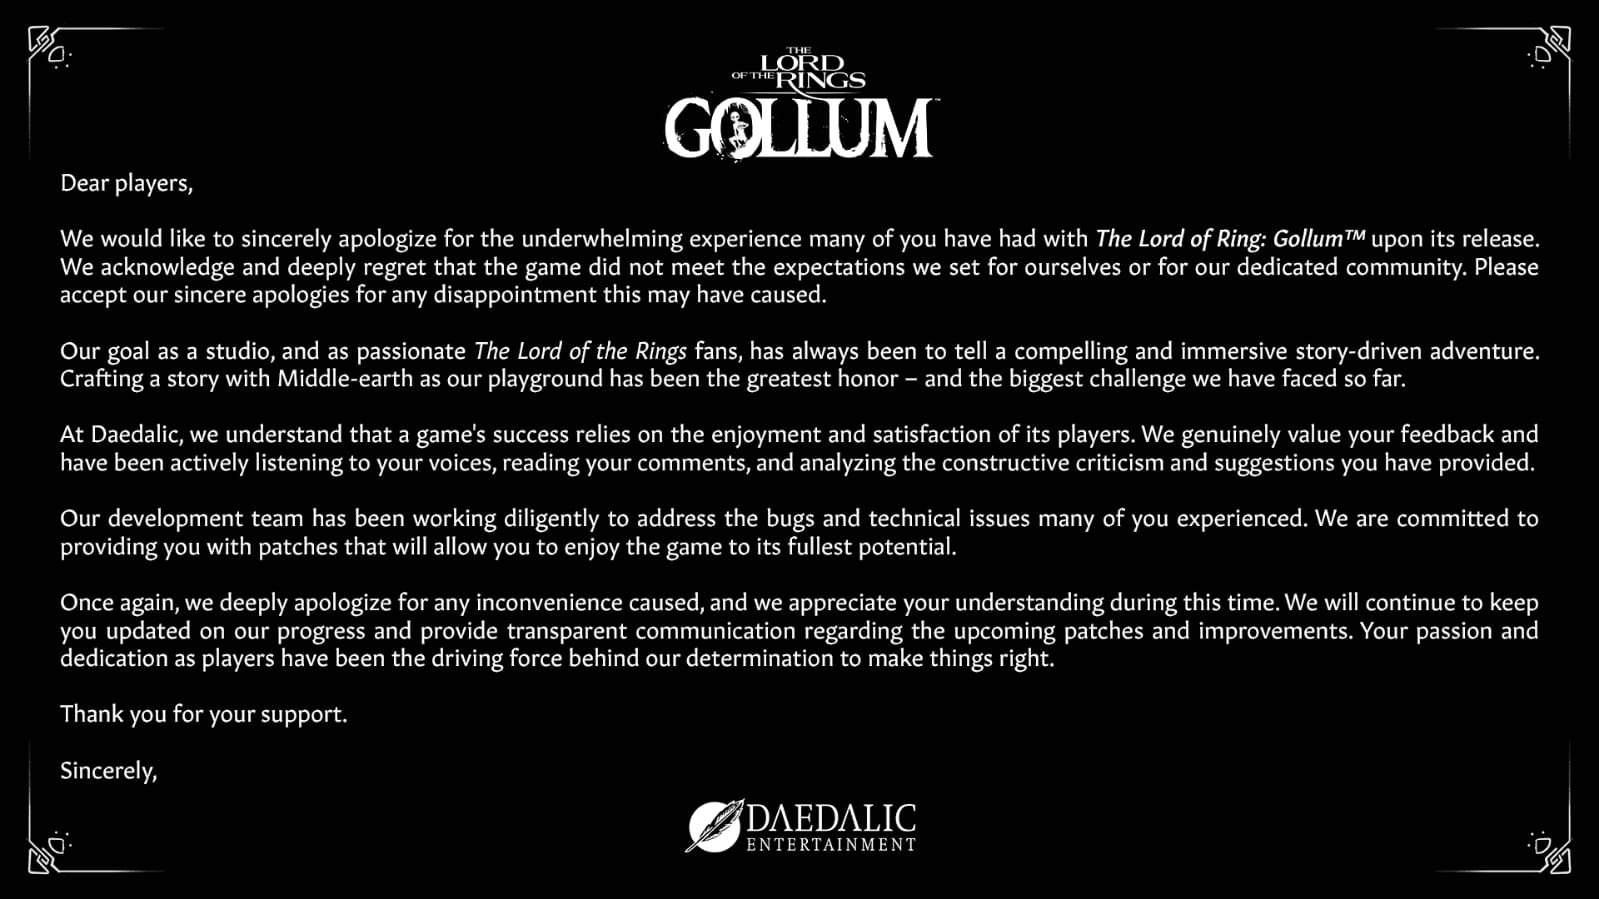 The Lord of the Rings: Gollum' ganha data oficial de lançamento; confira -  Olhar Digital